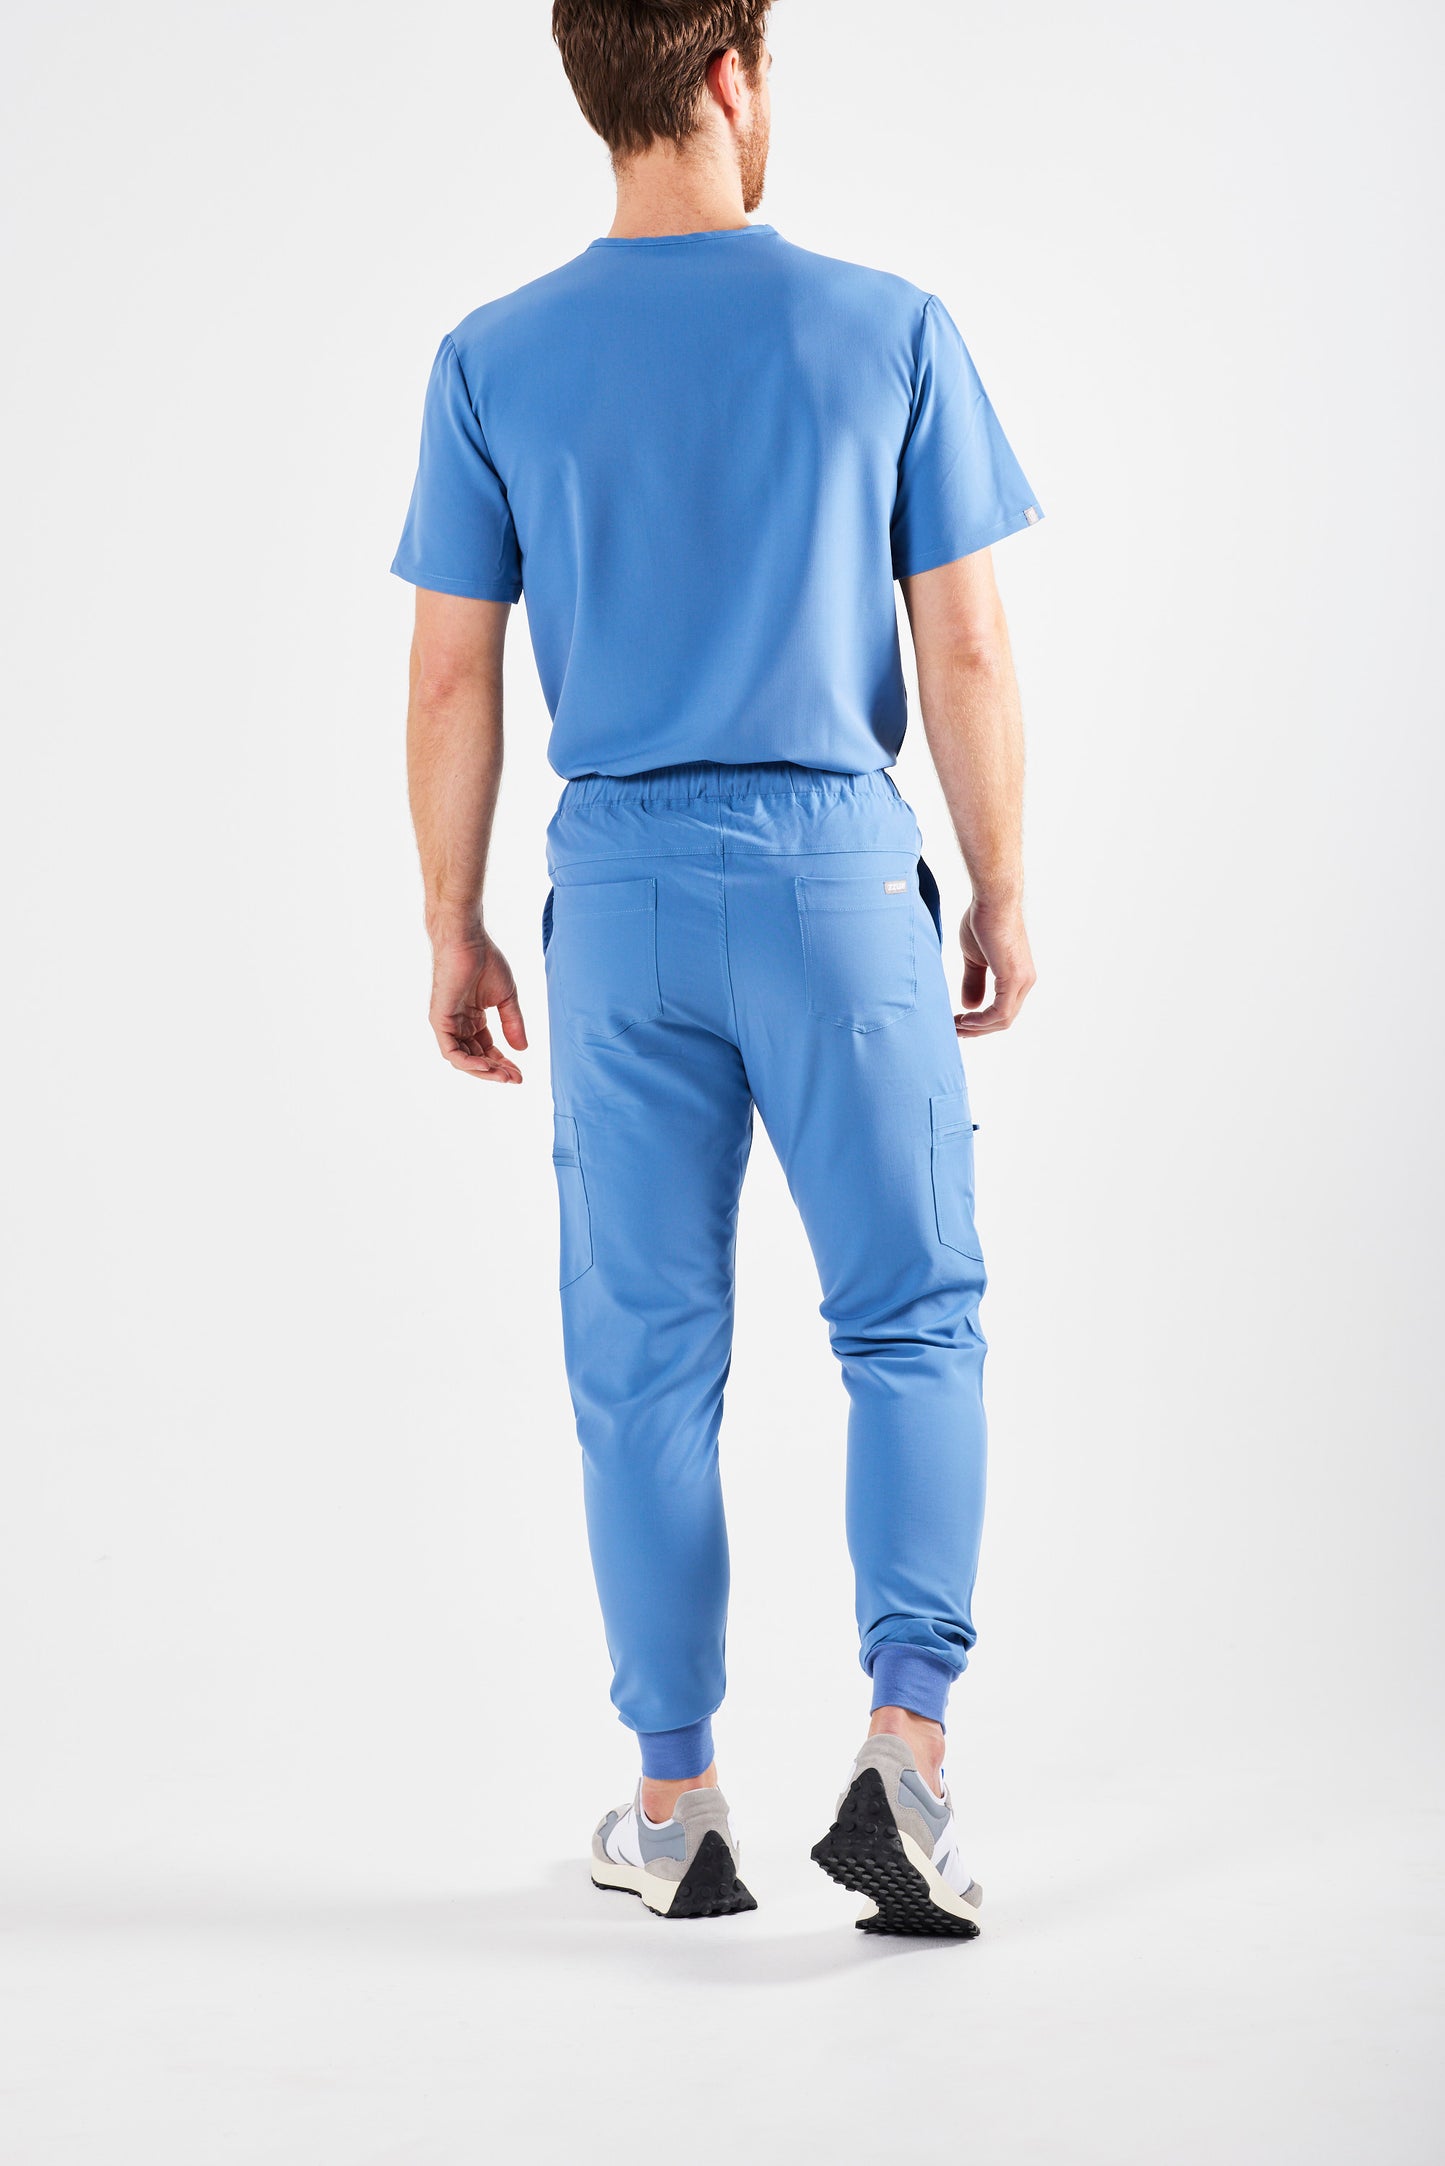 CLASSIC MEN’S JOGGER SCRUB PANTS (CEIL BLUE) - NEW ARRIVALS